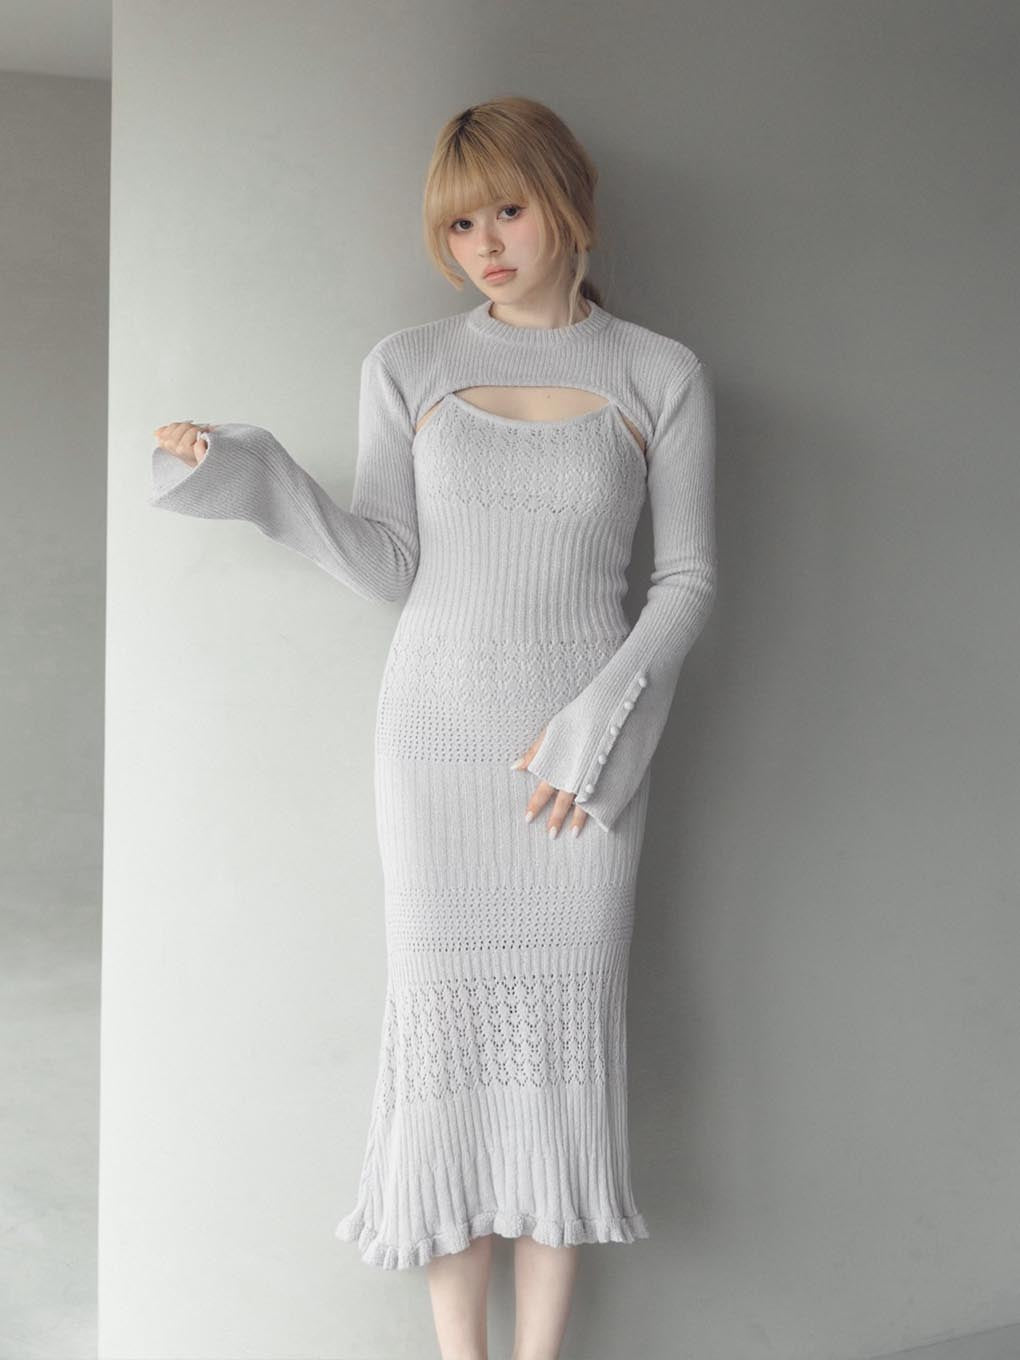 Celeste Crochet Dress in Brown/White